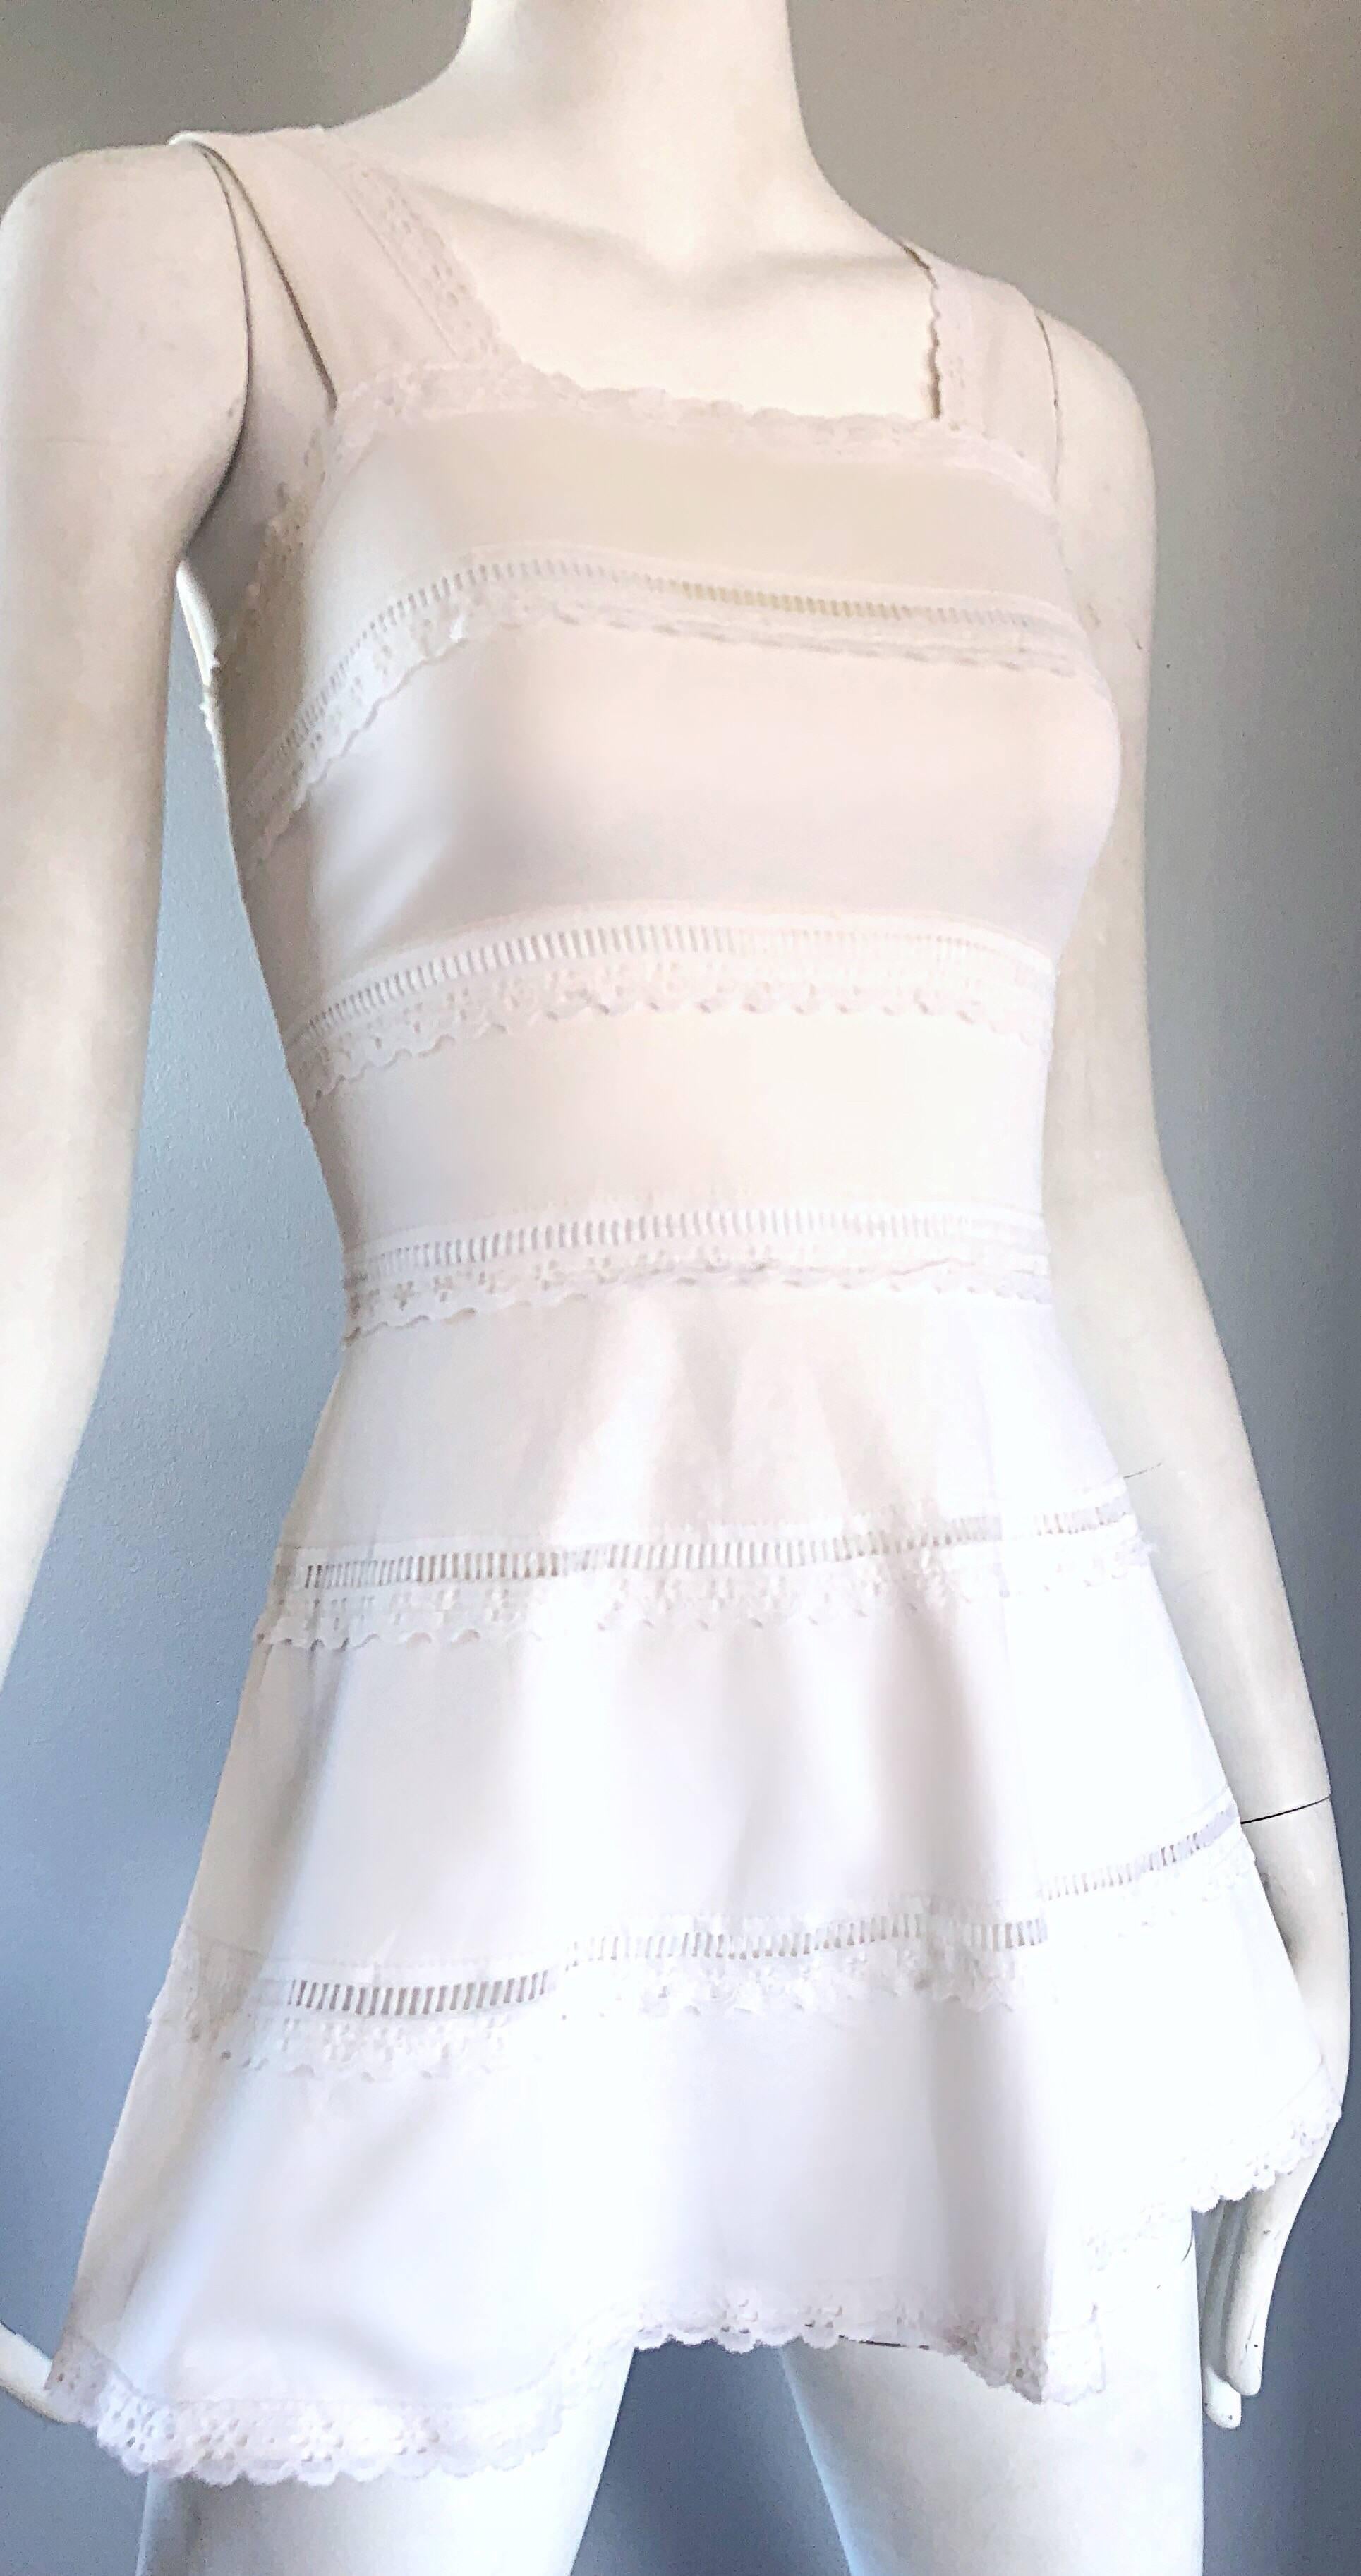 Women's 1960s White Knit Lace Cut Out A Line Vintage Mod Tunic 60s Mini Dress